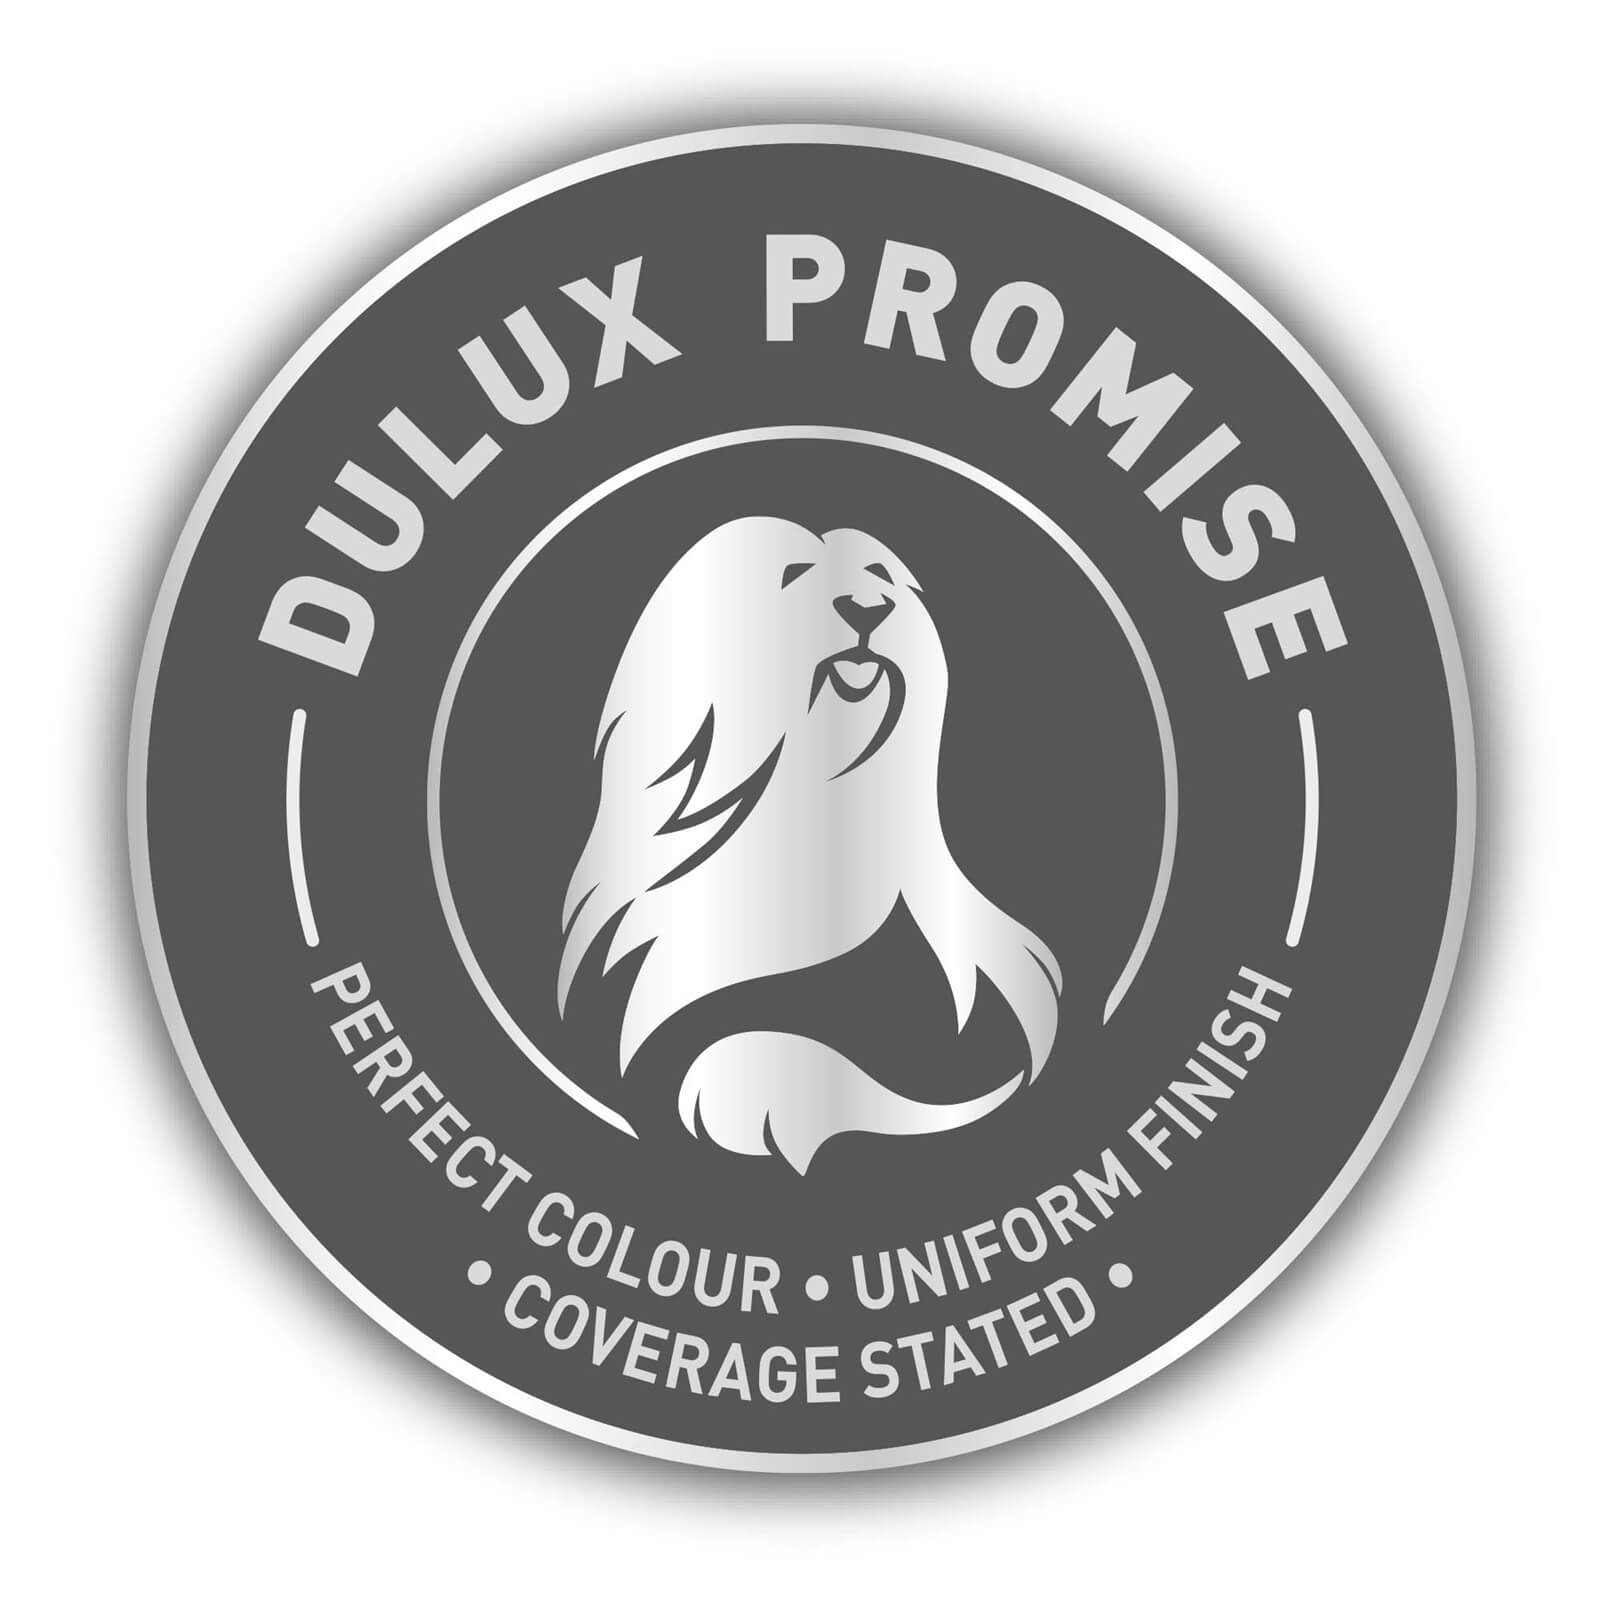 Dulux Silk Emulsion Paint Almond White - 2.5L